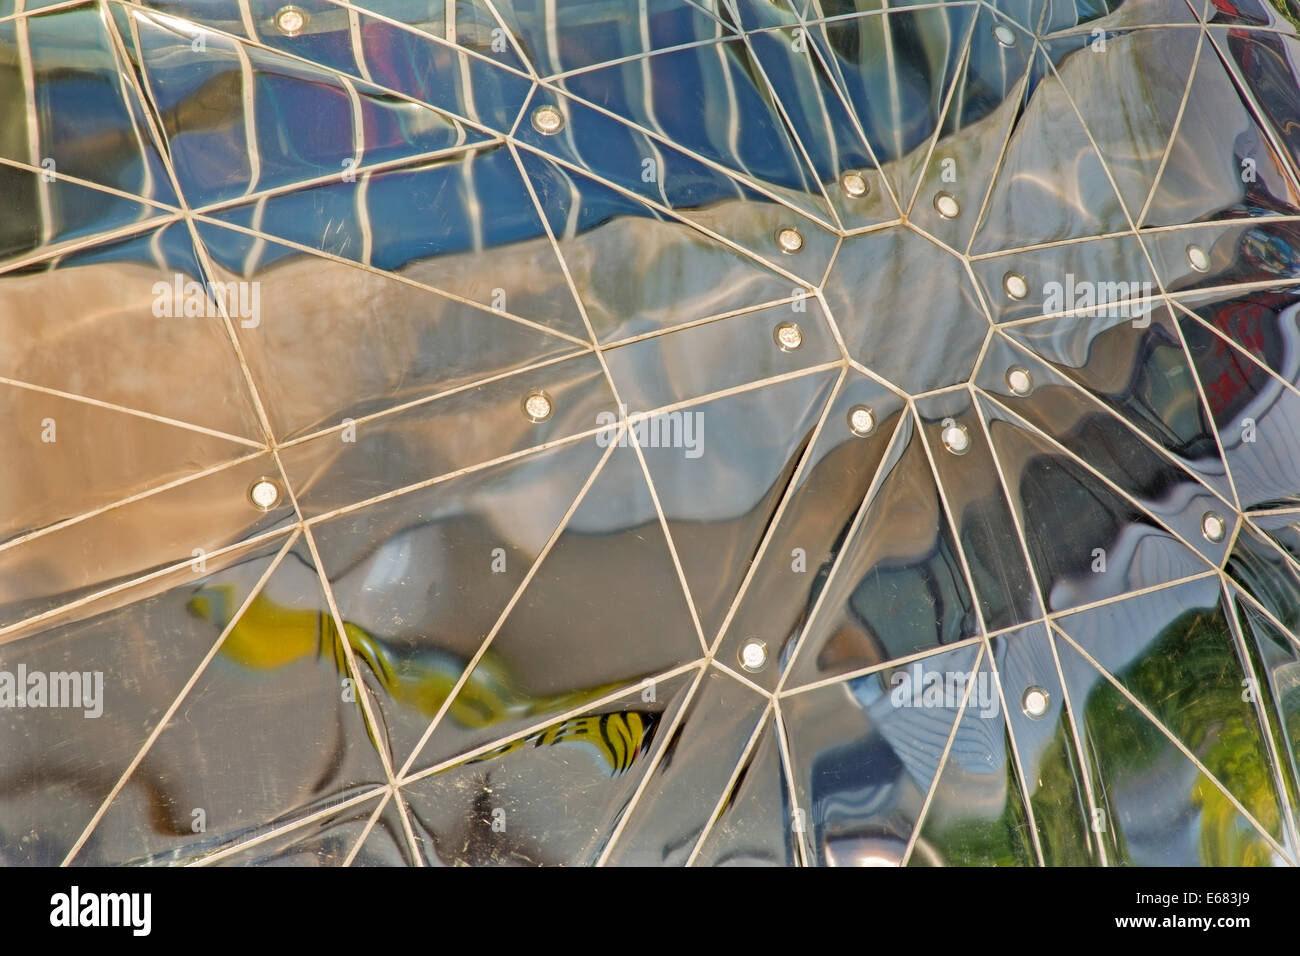 Bruxelles, Belgique - 16 juin 2014 : Détail de l'Atomium. Bâtiment moderne a été construit pour l'Expo '58 Banque D'Images